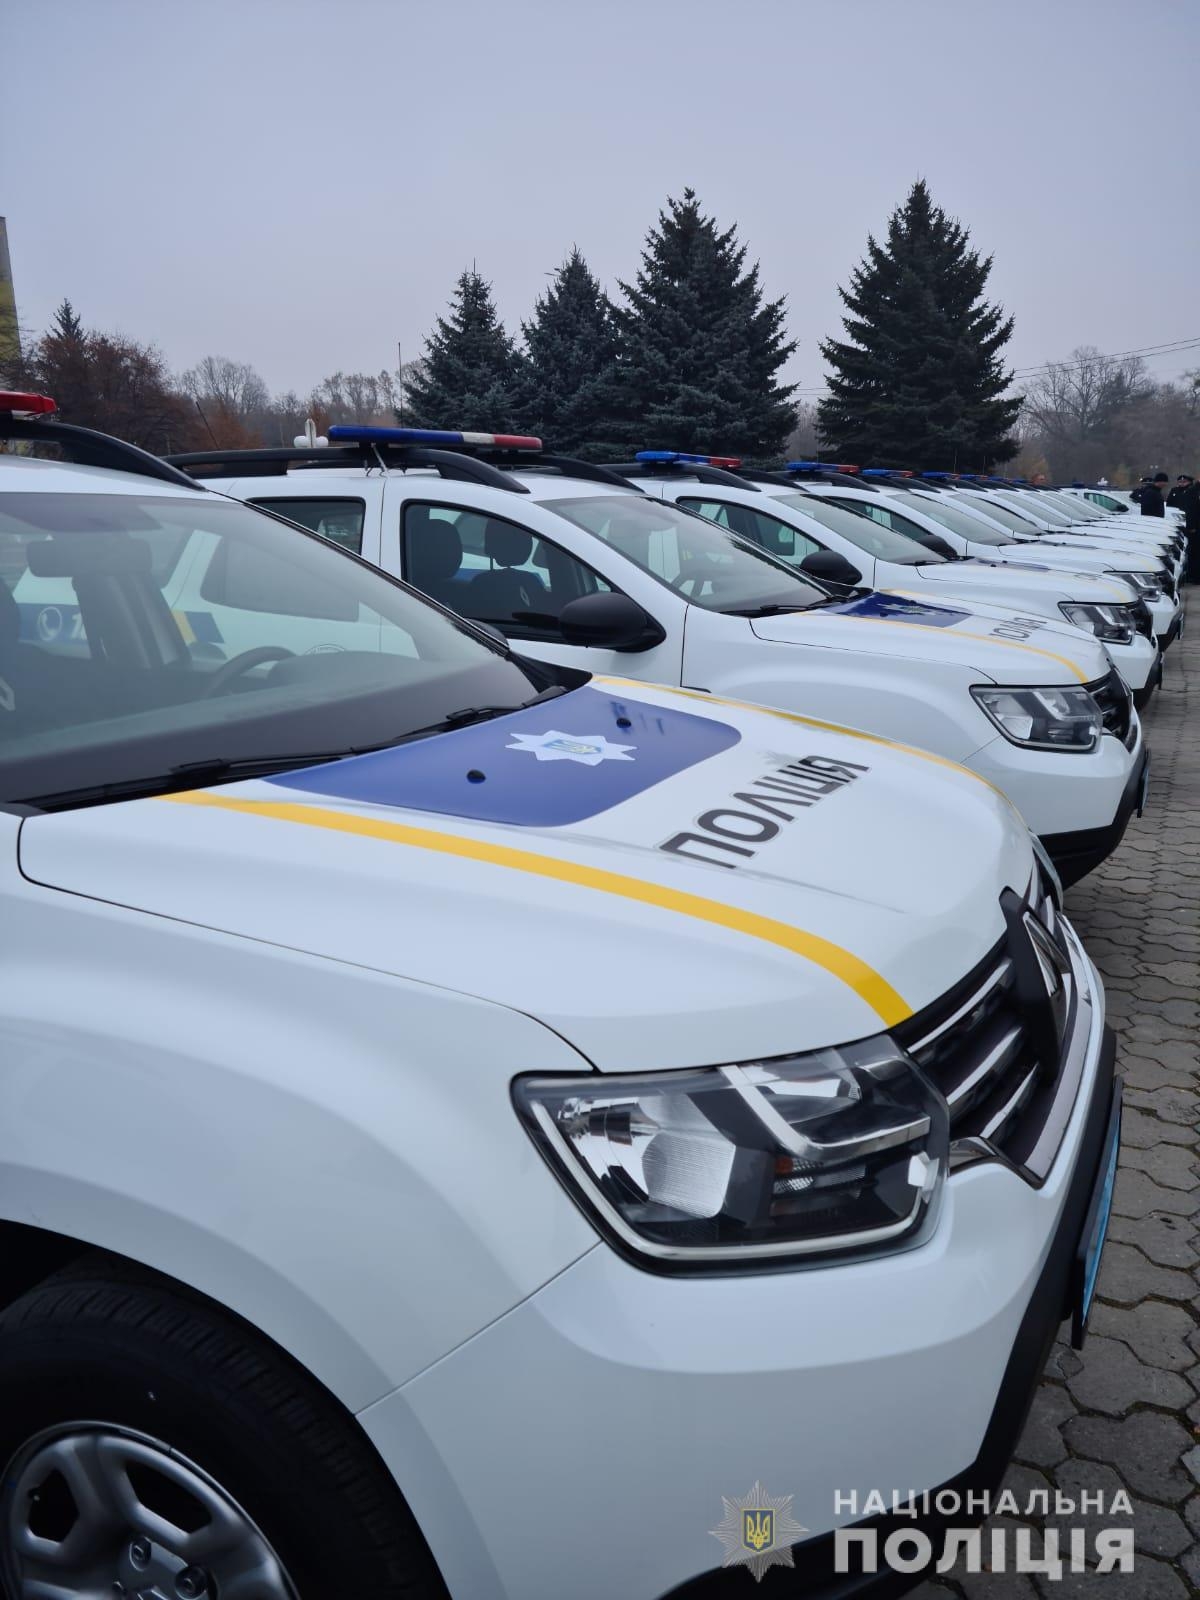 У Вінниці поліцейські отримали нові автомобілі та зброю